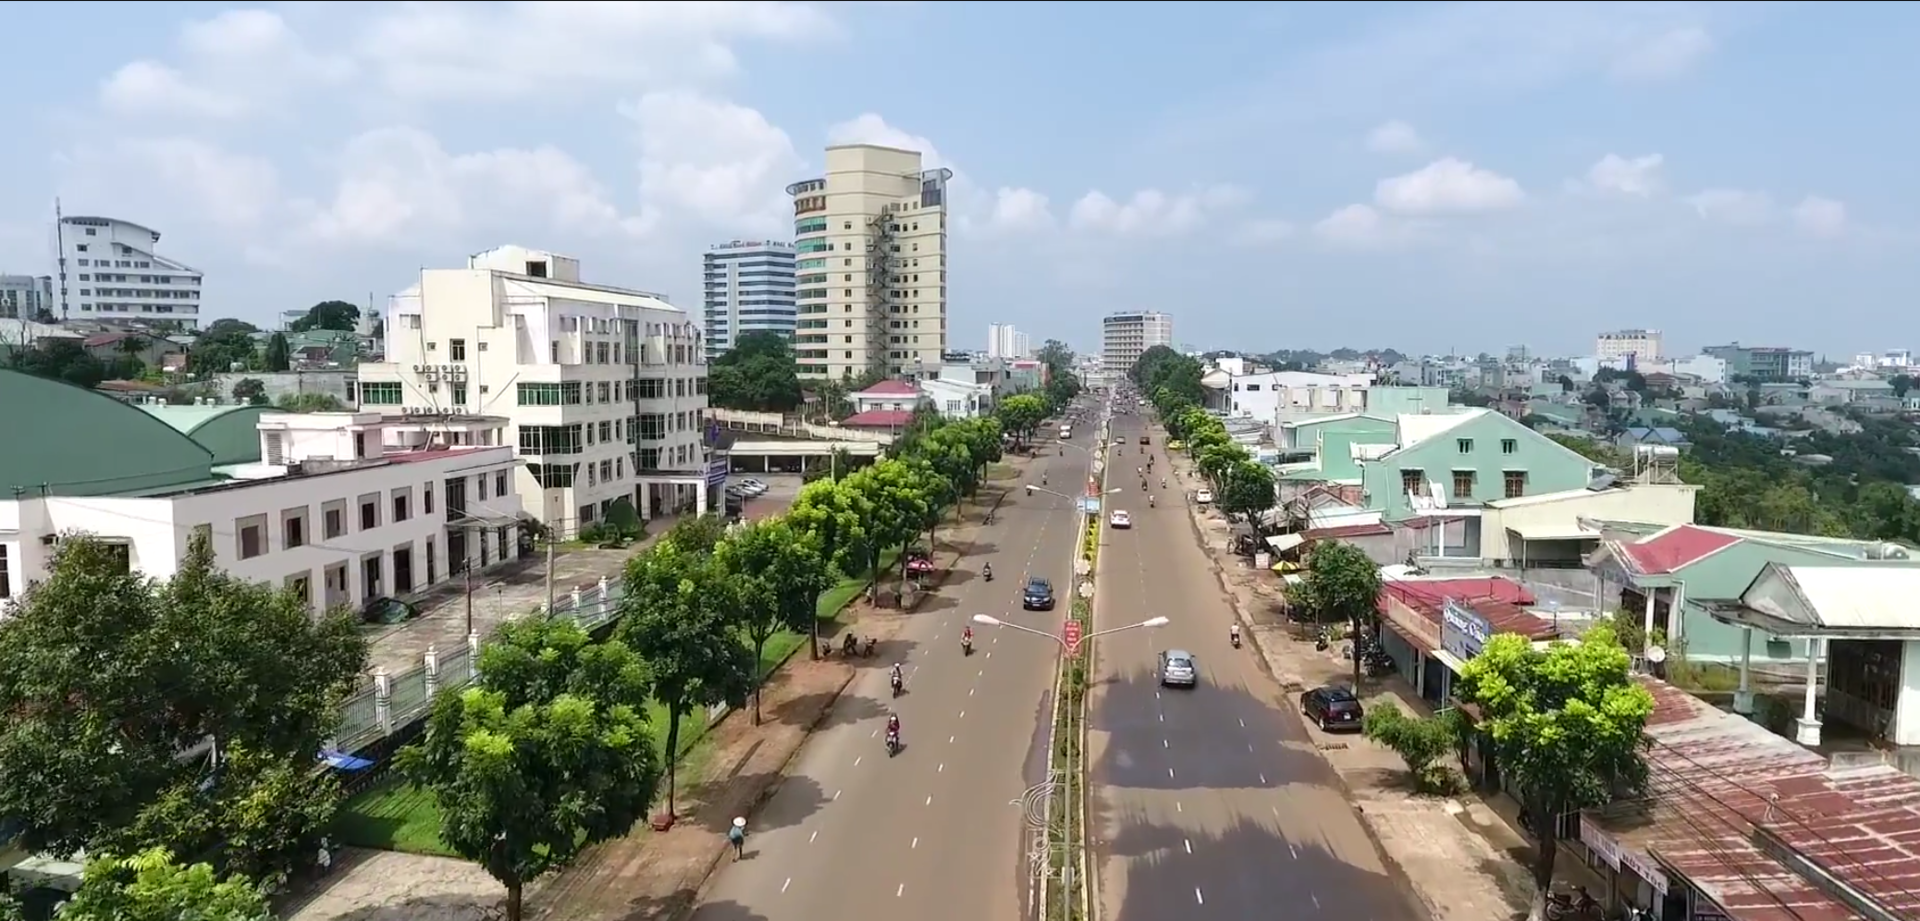 Đường Lê Duẩn ở thành phố Pleiku, Gia Lai. Ảnh Wikipedia